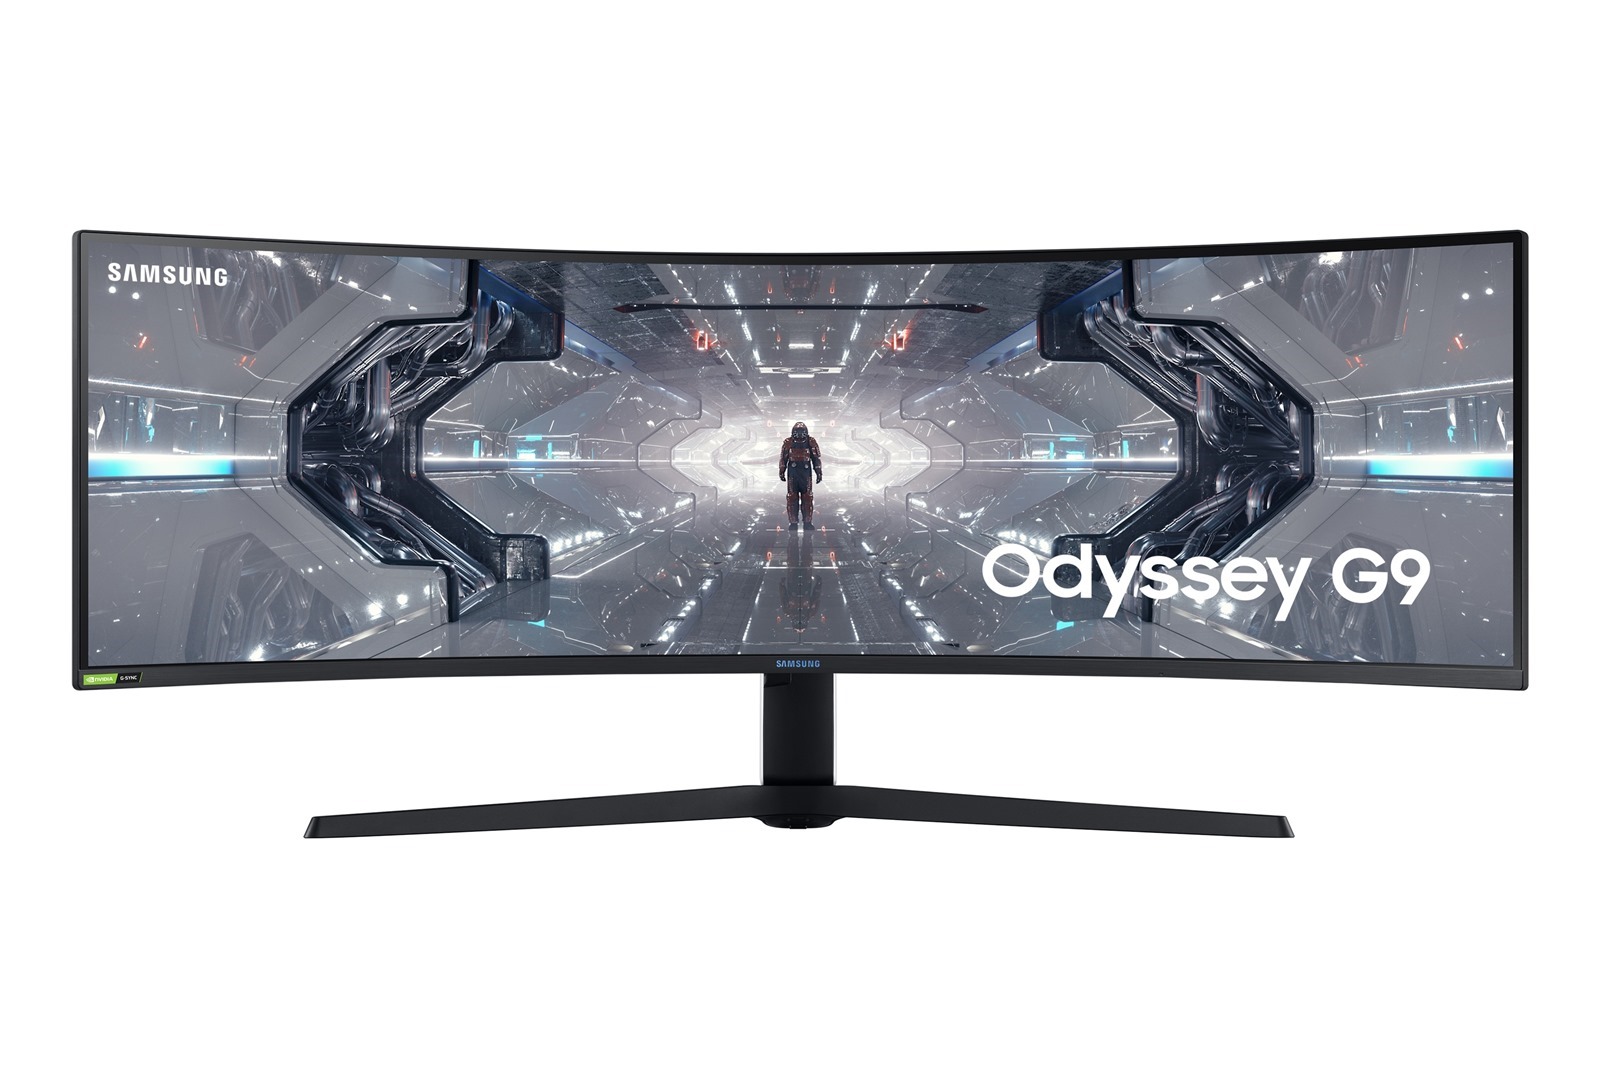 奧德賽 Odyssey 系列曲面電競螢幕氣勢登台全球首款雙 2K Odyssey G9 、玩家首選 Odyssey G7 曲面電競螢幕領先業界獨創 1000R 曲率 強悍內在、科技外觀 暢享專業級遊戲快感 @3C 達人廖阿輝